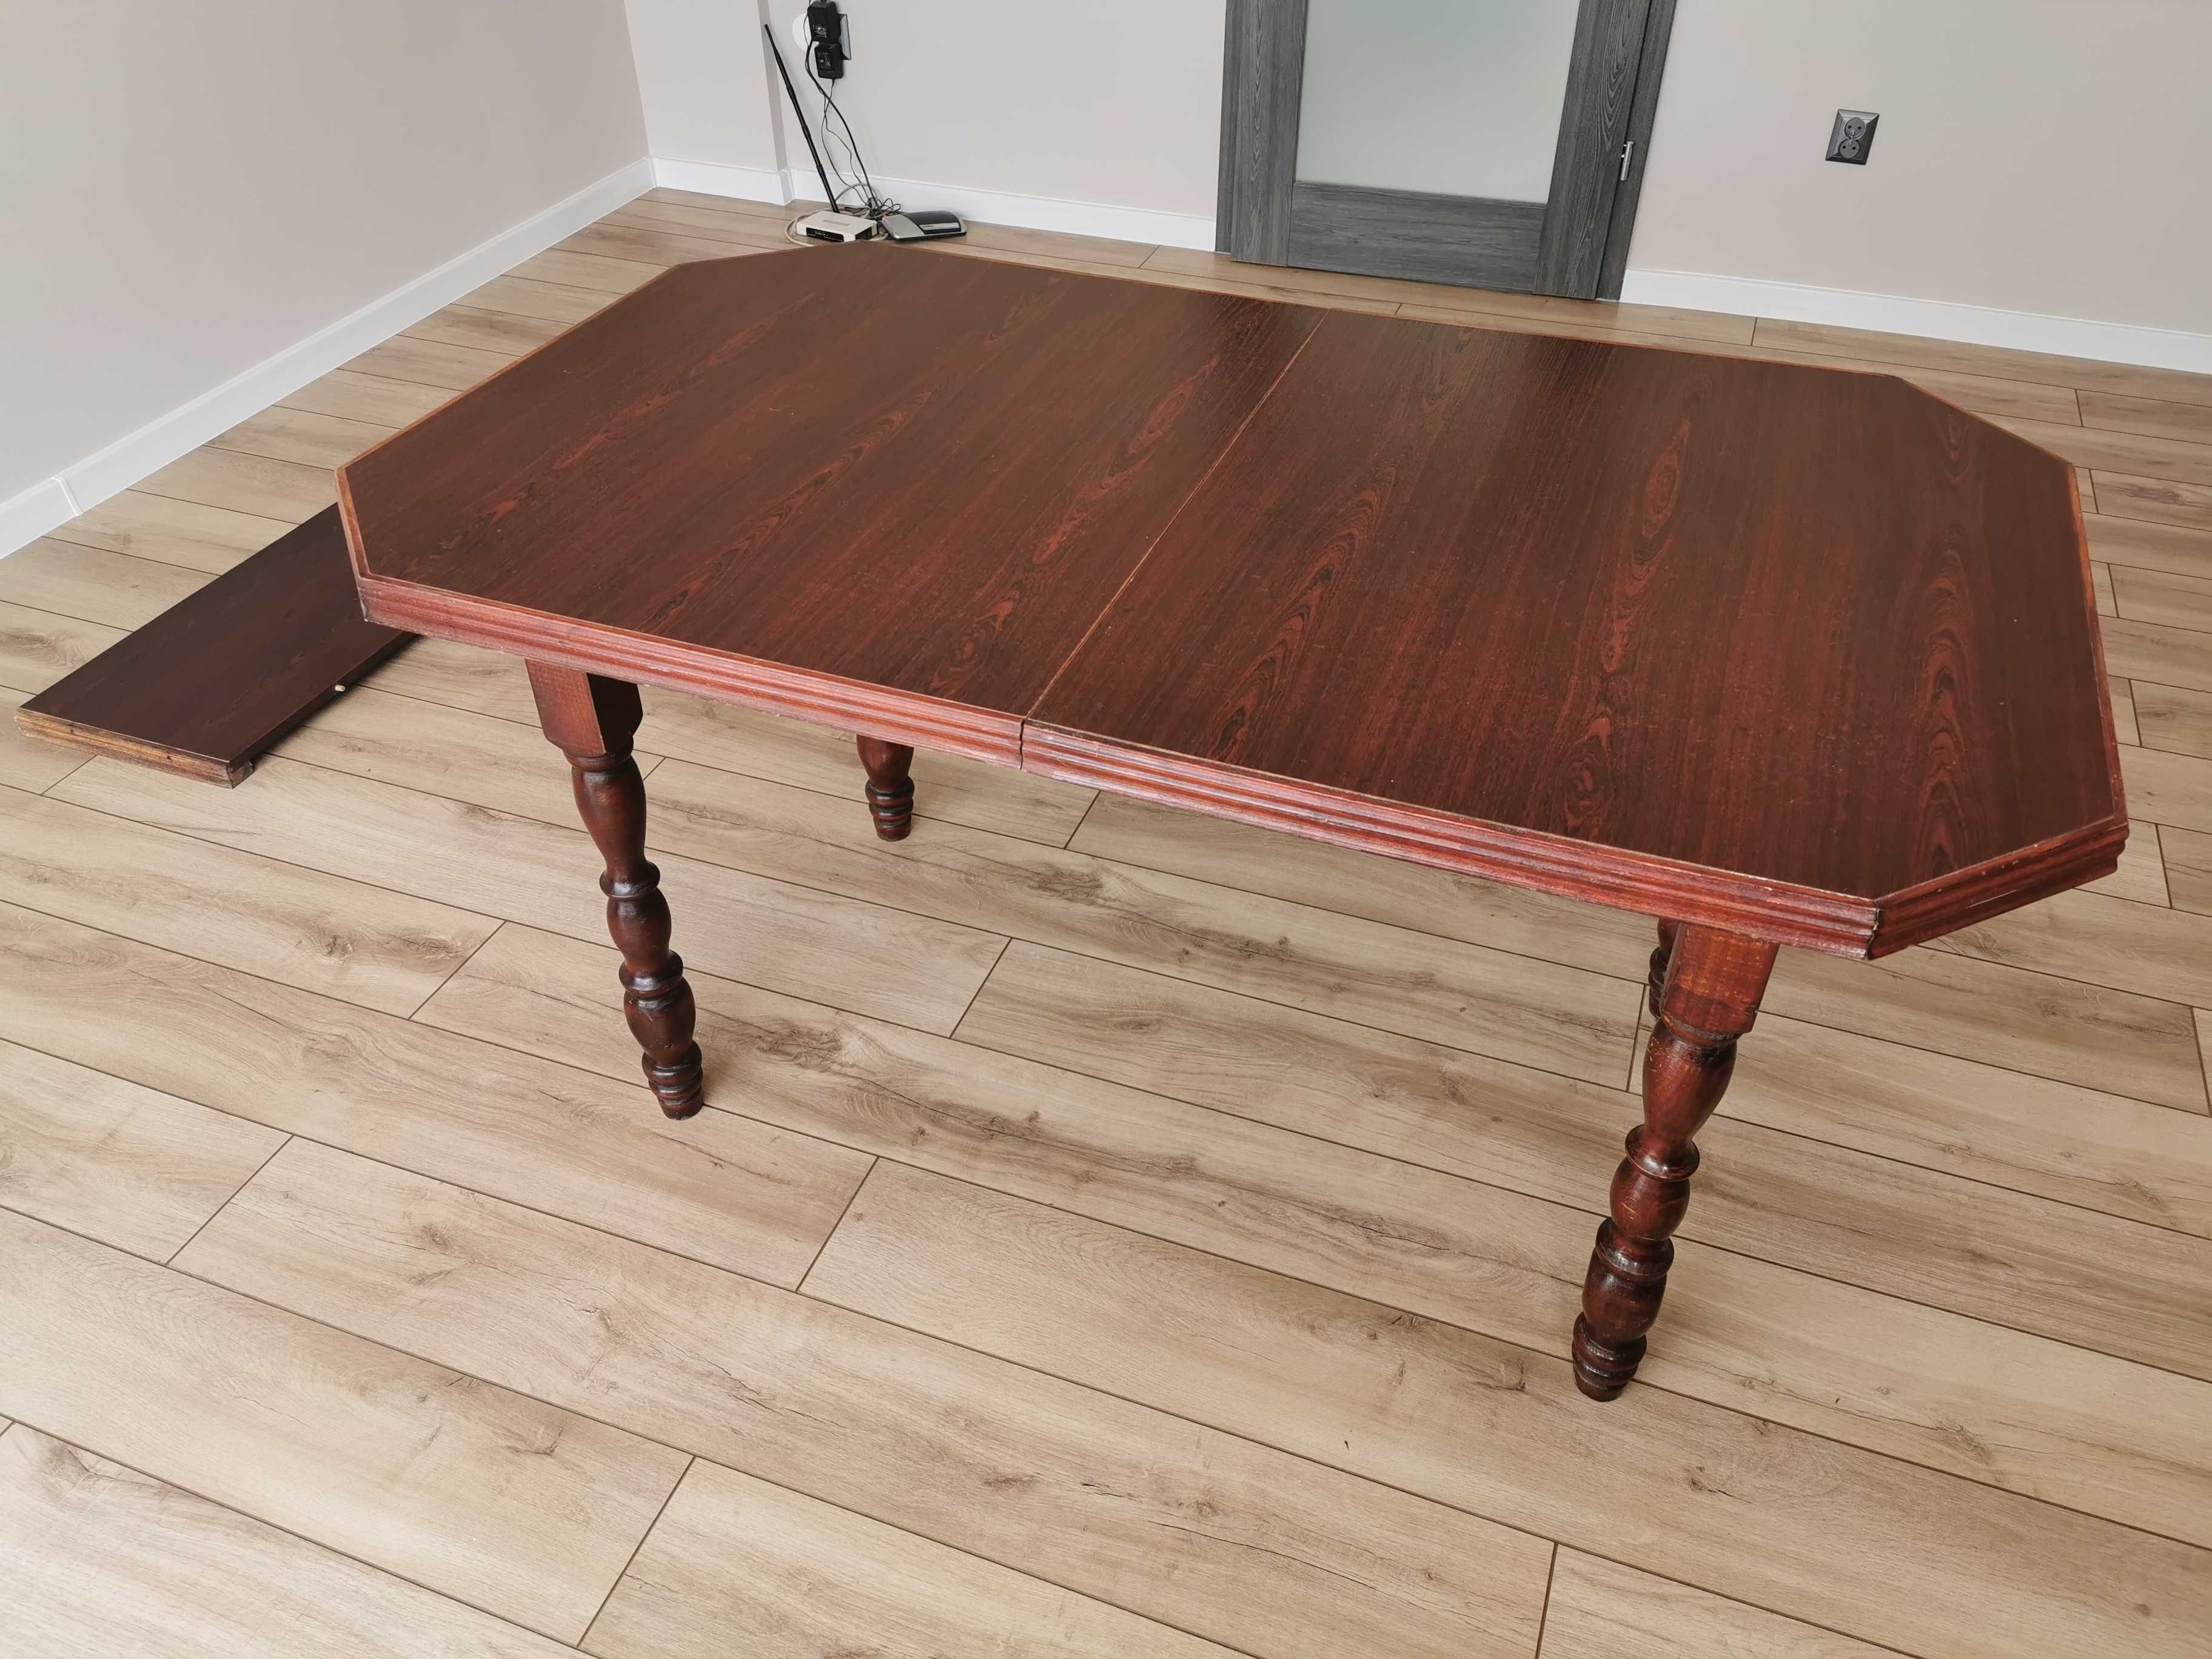 Stół rozkładany mahoniowy rzeźbione nogi elegancki antyczny